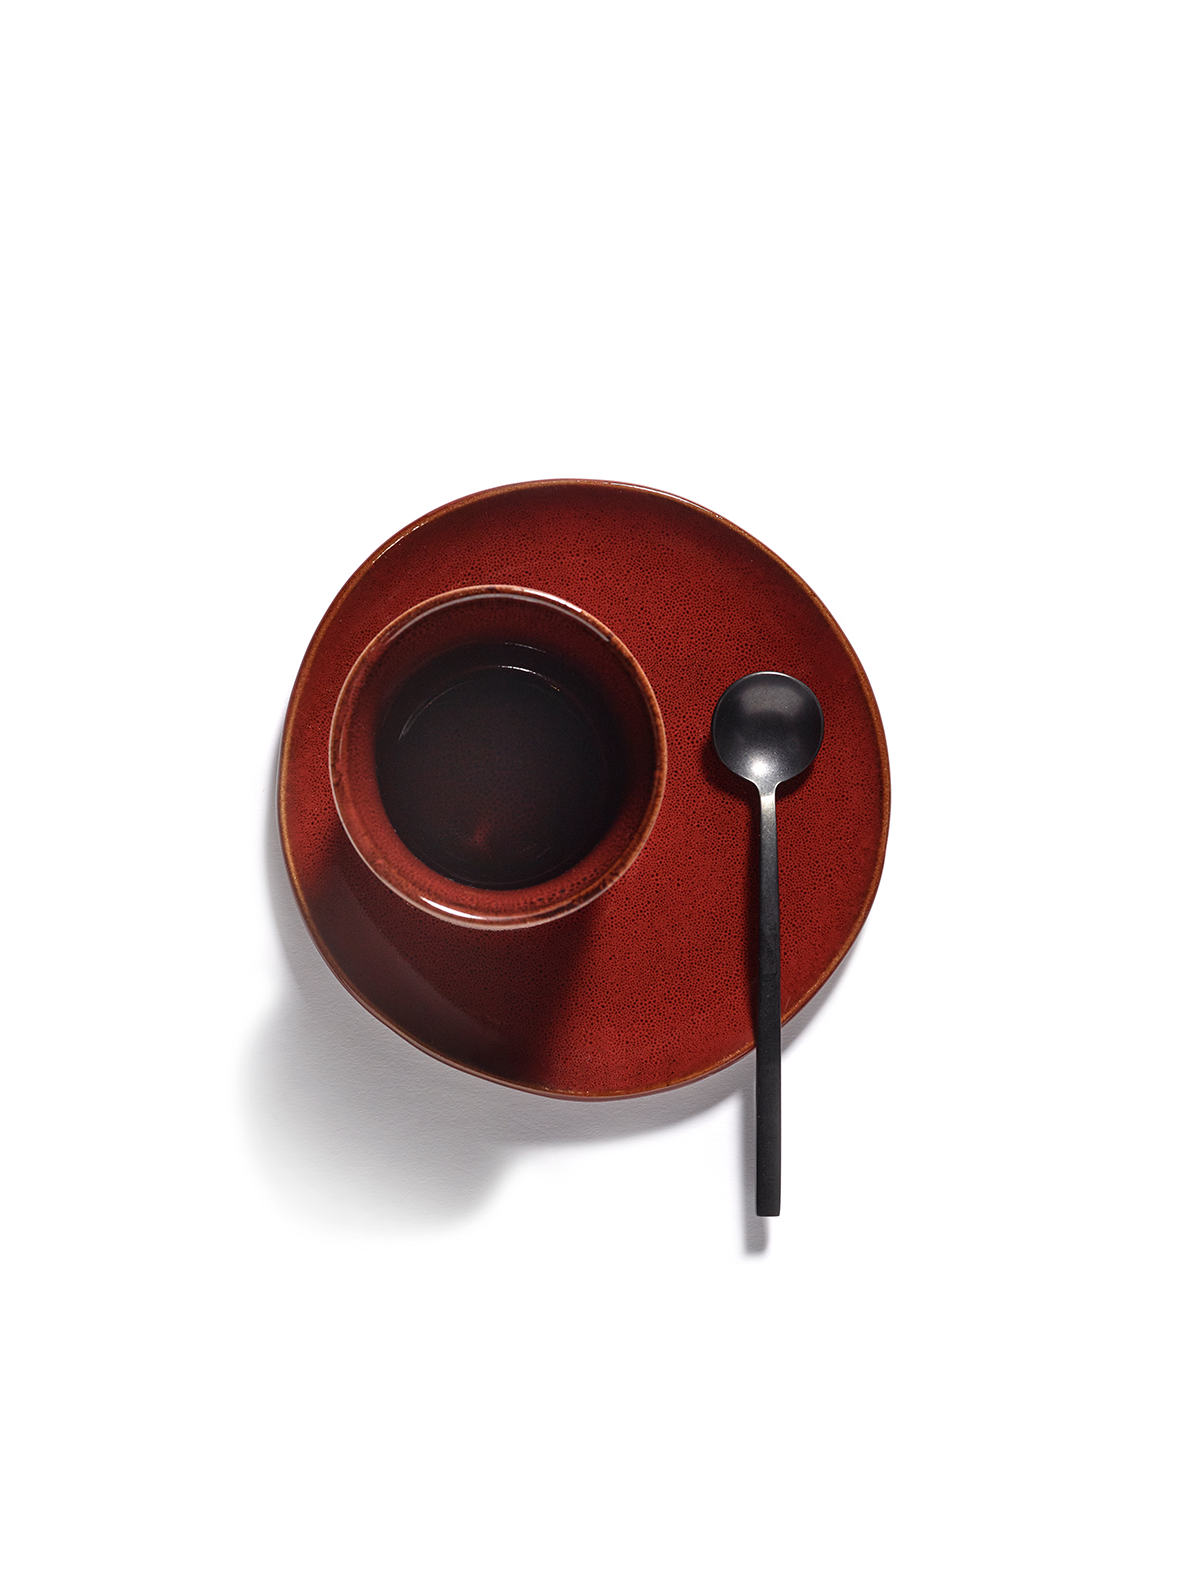 Espressokop/Eierdopje - La Mère by Marie Michielssen -  Venetian red